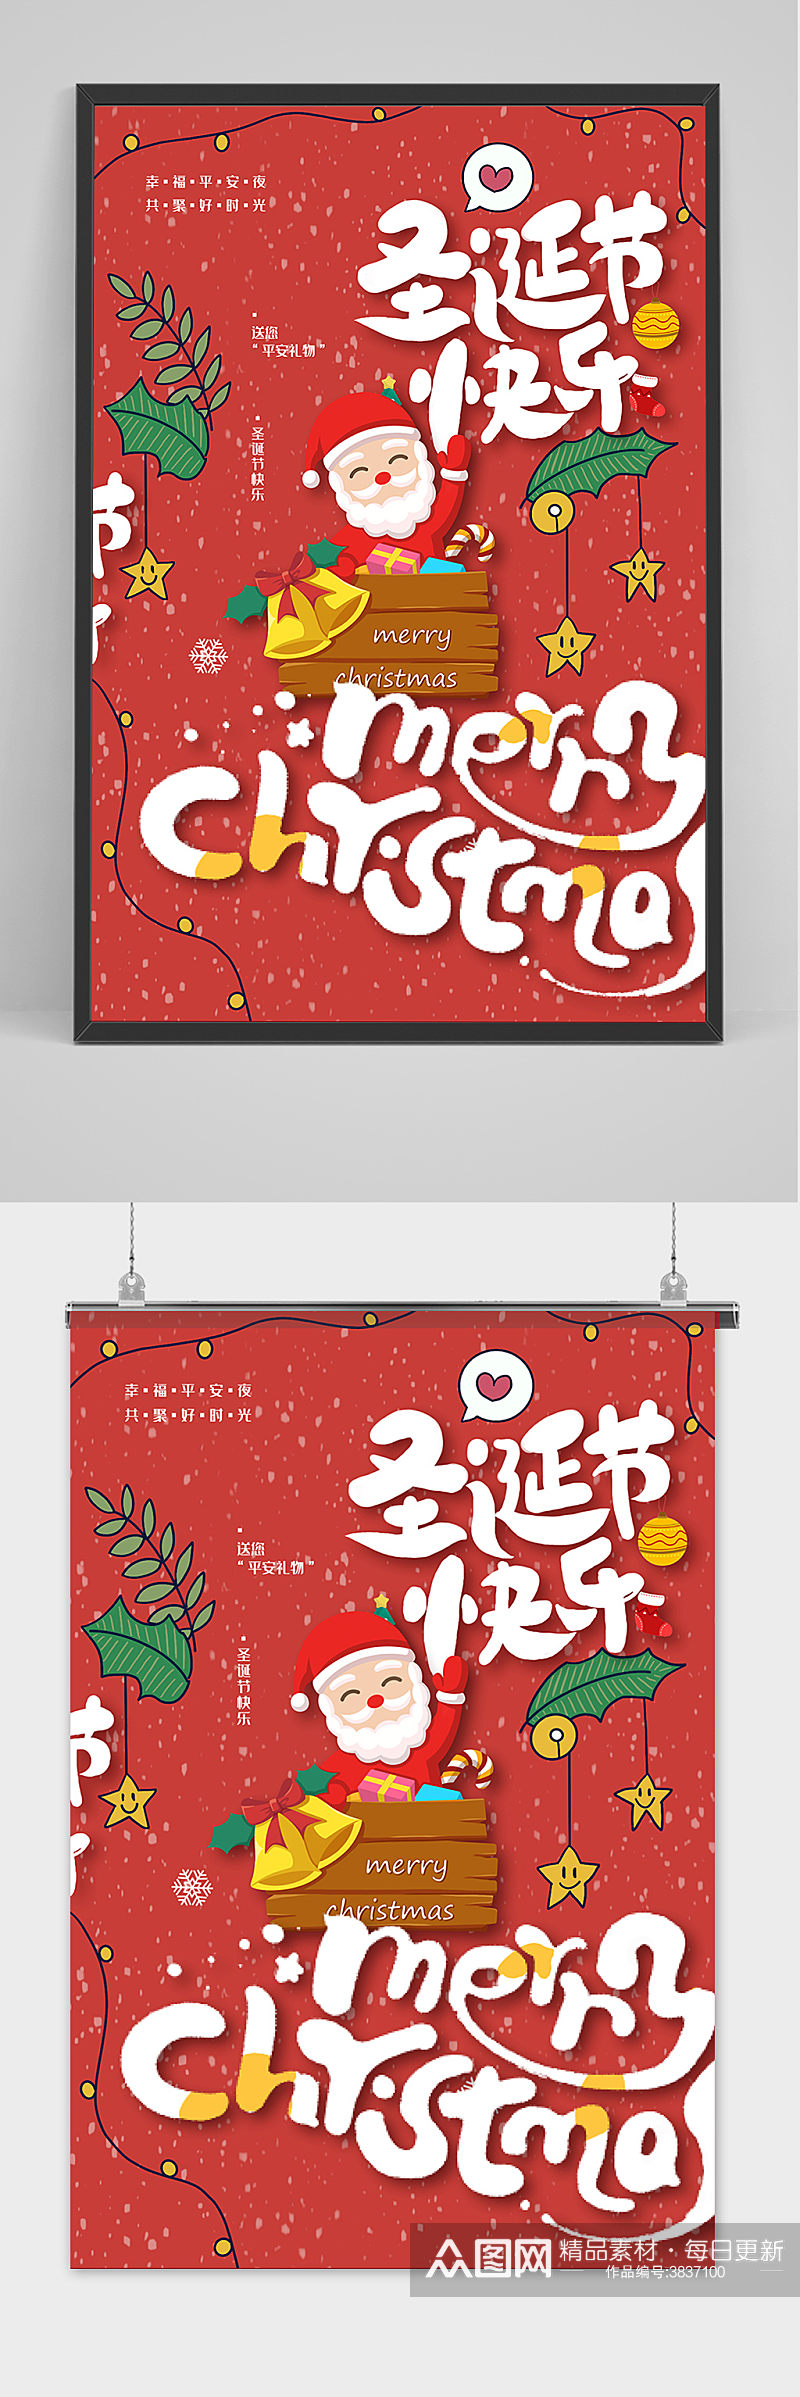 红色圣诞节节日宣传促销喜庆海报素材